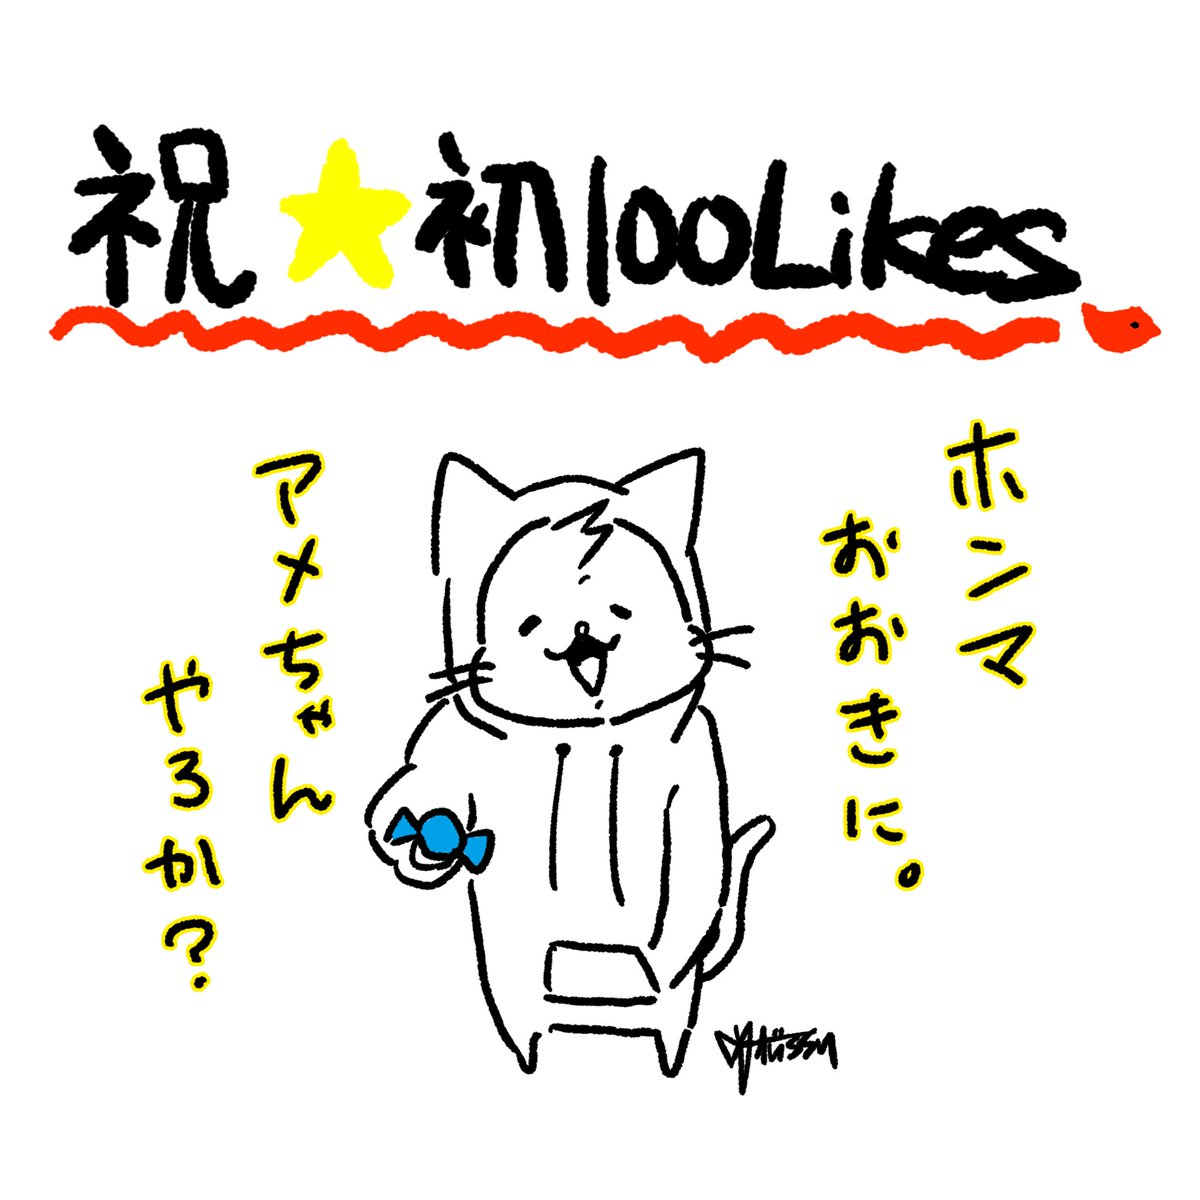 100いいね!ありがとうございます?❤️❗️

こうして続けられるのも、
ほとんど皆さまのおかげ様です。

多謝???

#LINEスタンプ #イラスト #大阪ねこ #ねこやで 